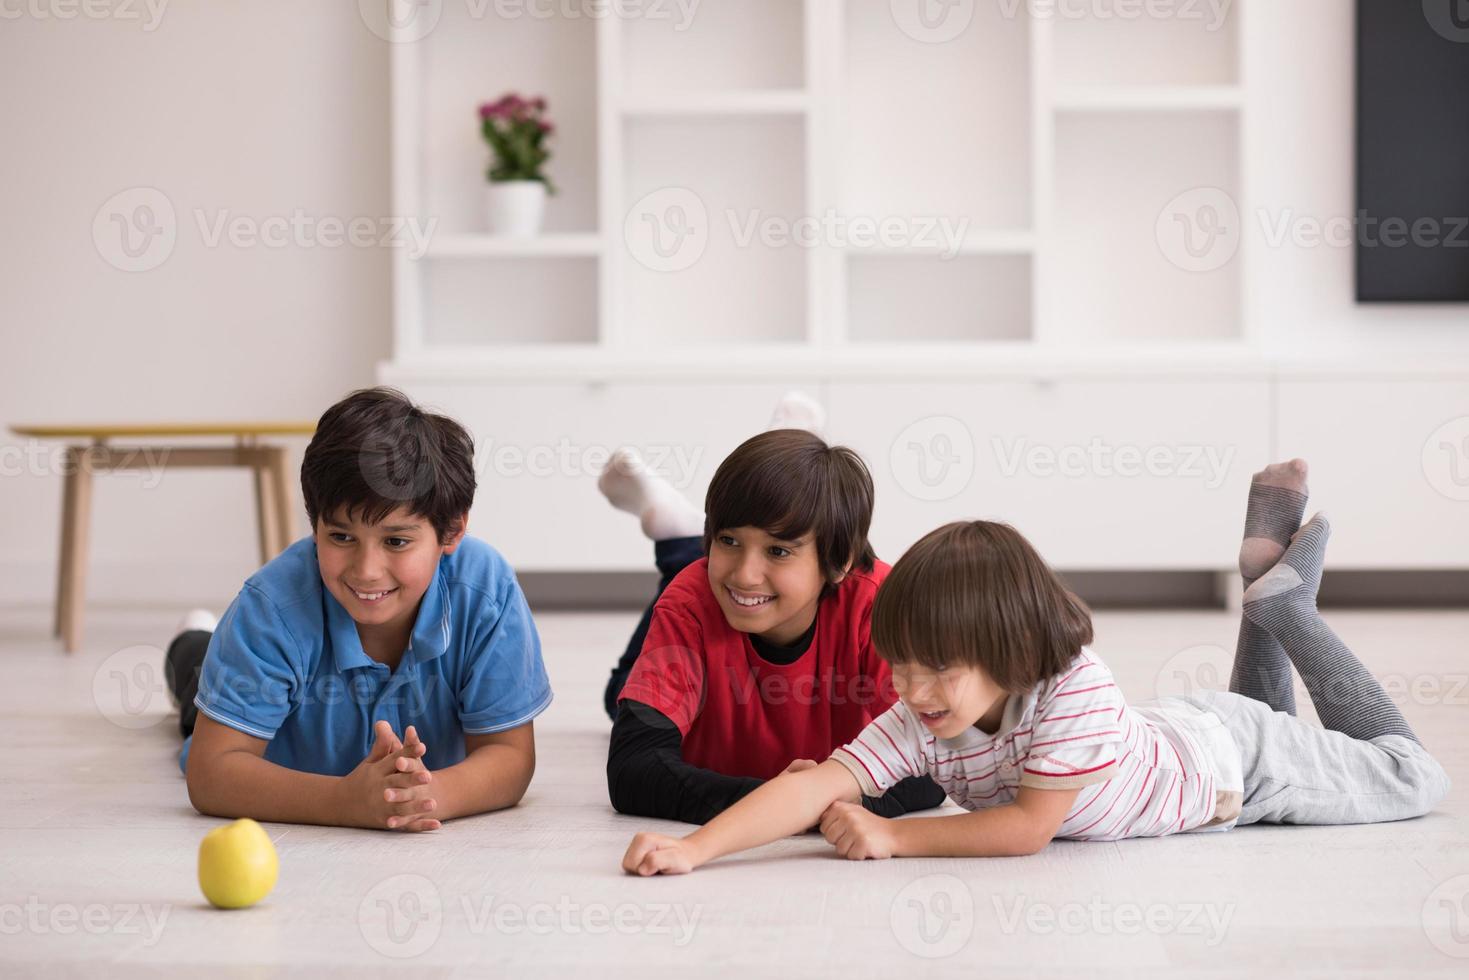 boys having fun with an apple on the floor photo